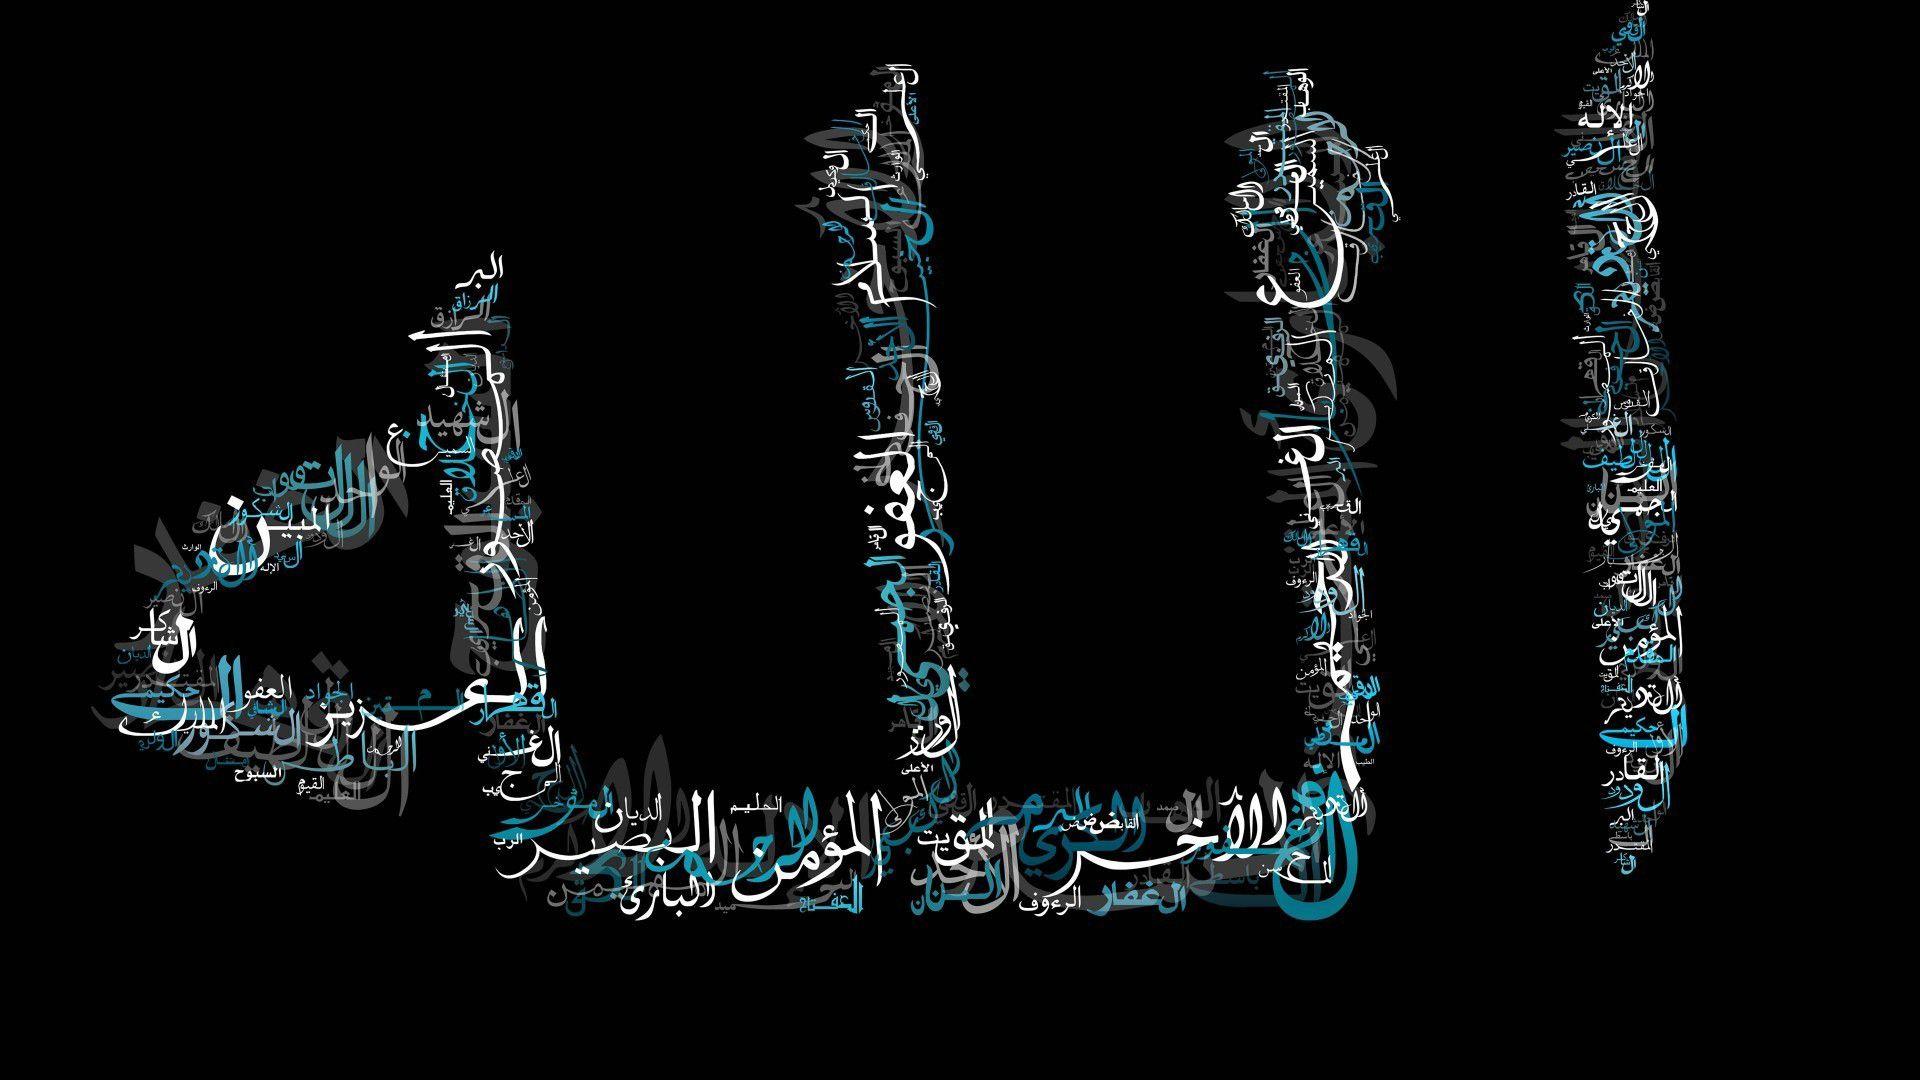 بهترین عکس پروفایل الله با فونت نام های مختلف خداوند